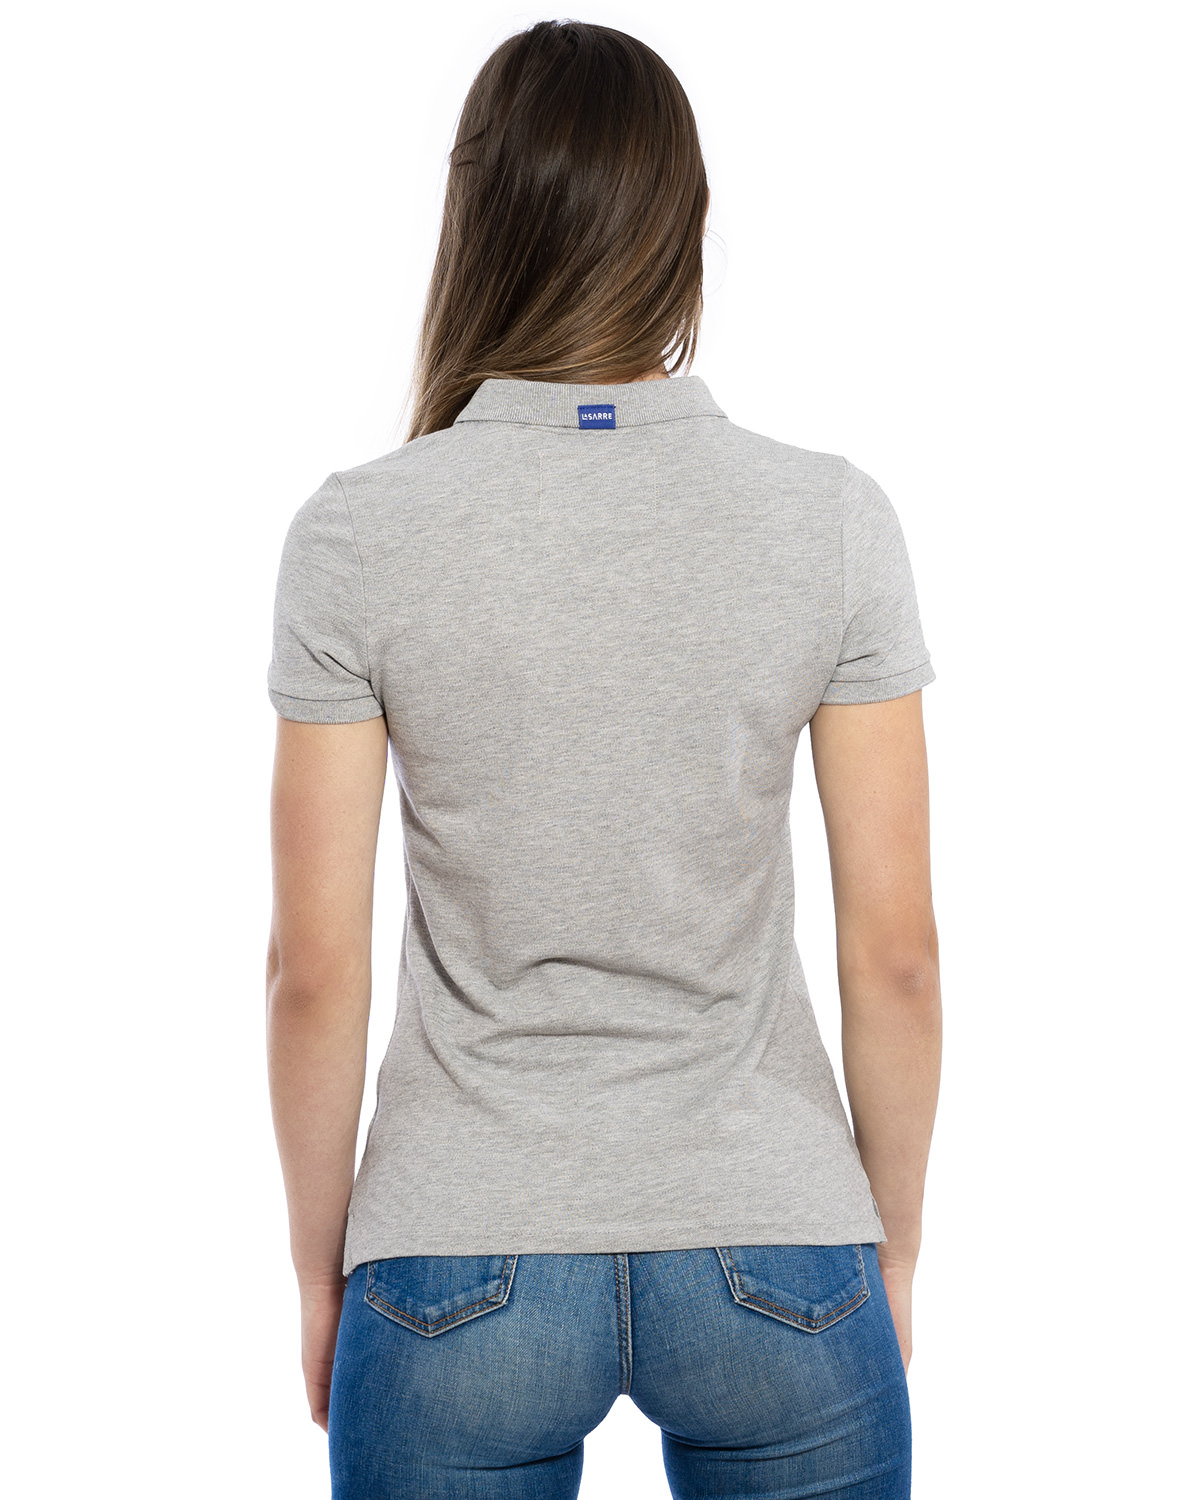 Rücken-Ansicht des hochwertig bestickten LASARRE Polo Shirt für Frauen in der Farbe Asch-Grau von der Saarland Marke Lasarre mit LASARRE Wappen in Blau, Weiß, Rot auf der linken Brust und dem blauem LASARRE Markenzeichen am Saum